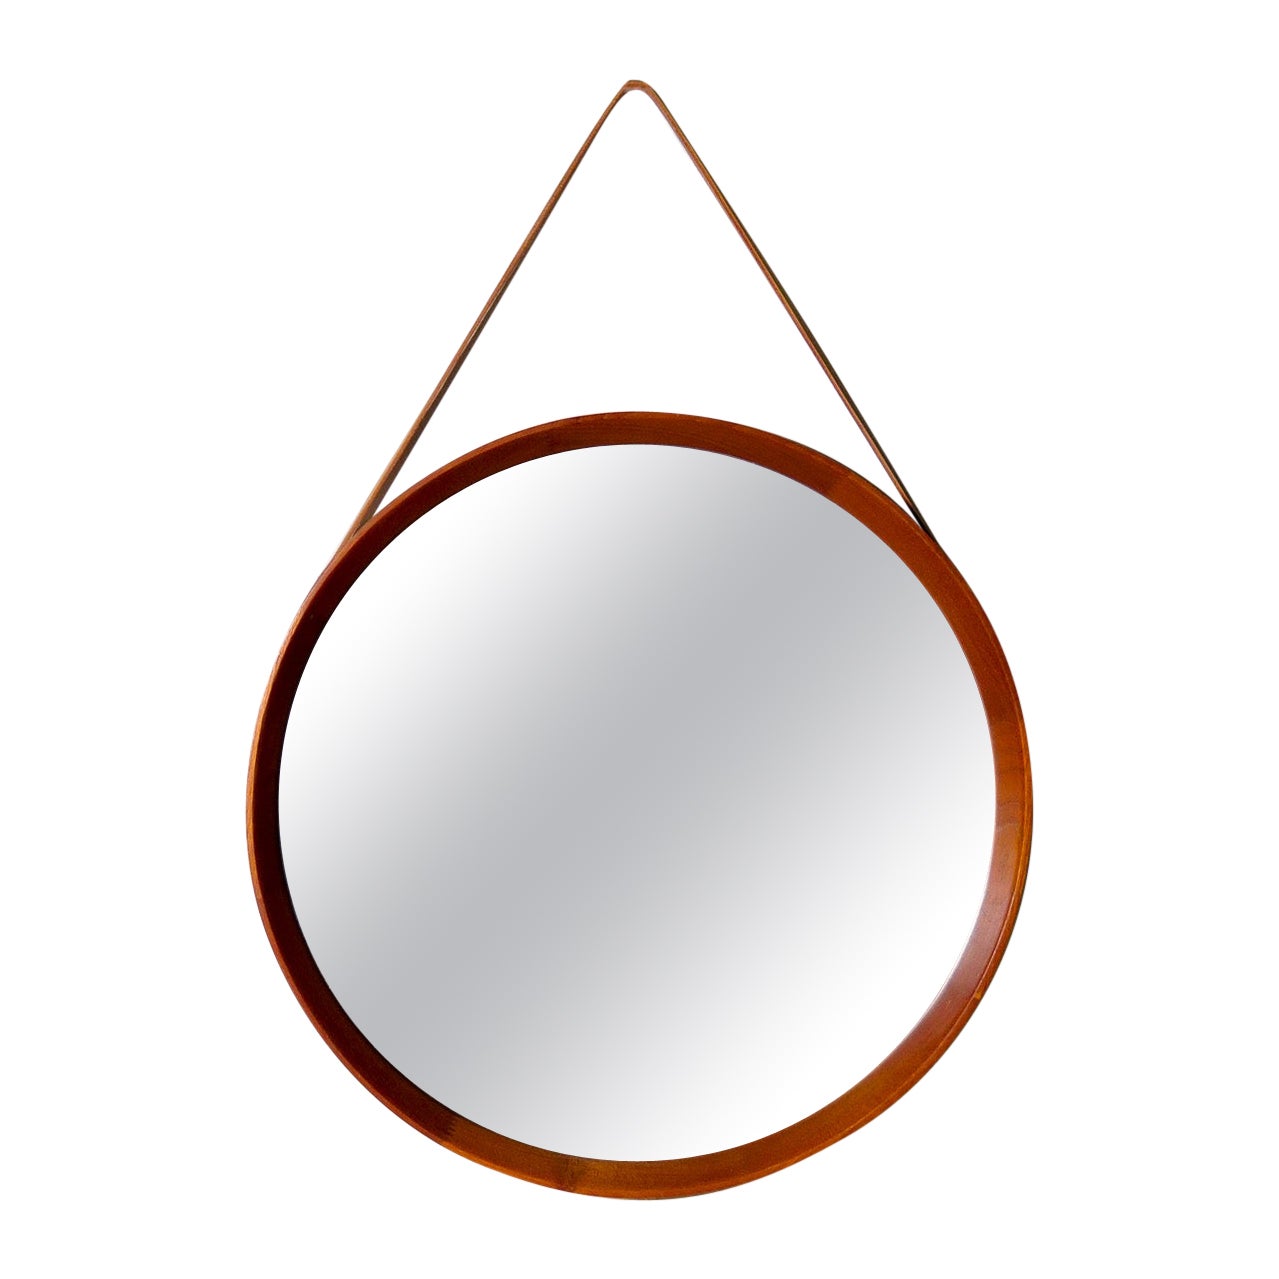 Midcentury Modern Round Mirror in Leather & Teak by Glas & Trä Hovmantorp Sweden